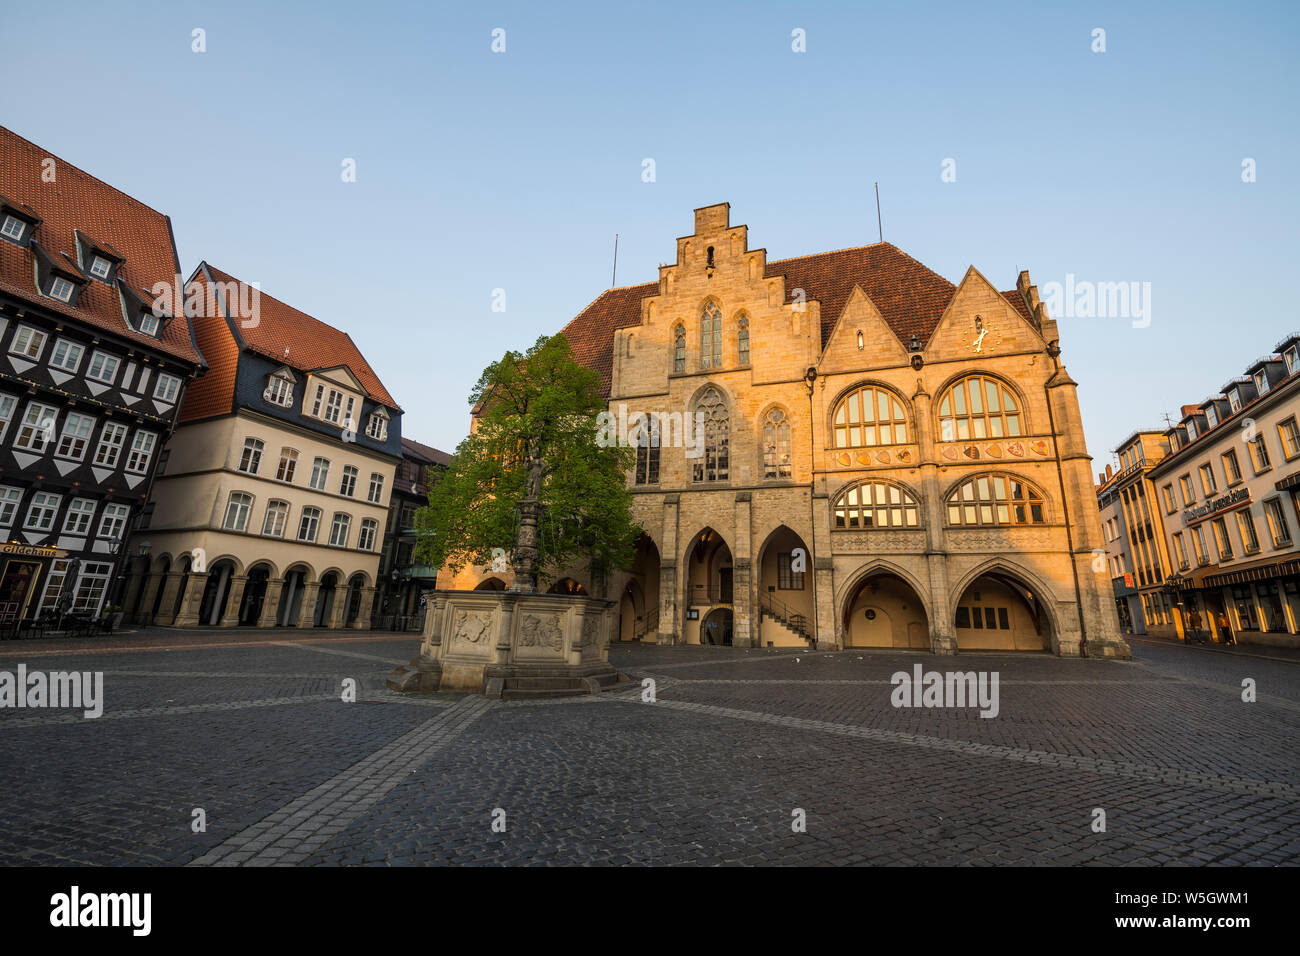 Place du marché historique, l'UNESCO World Heritage site, Hildesheim, Basse-Saxe, Allemagne, Europe Banque D'Images